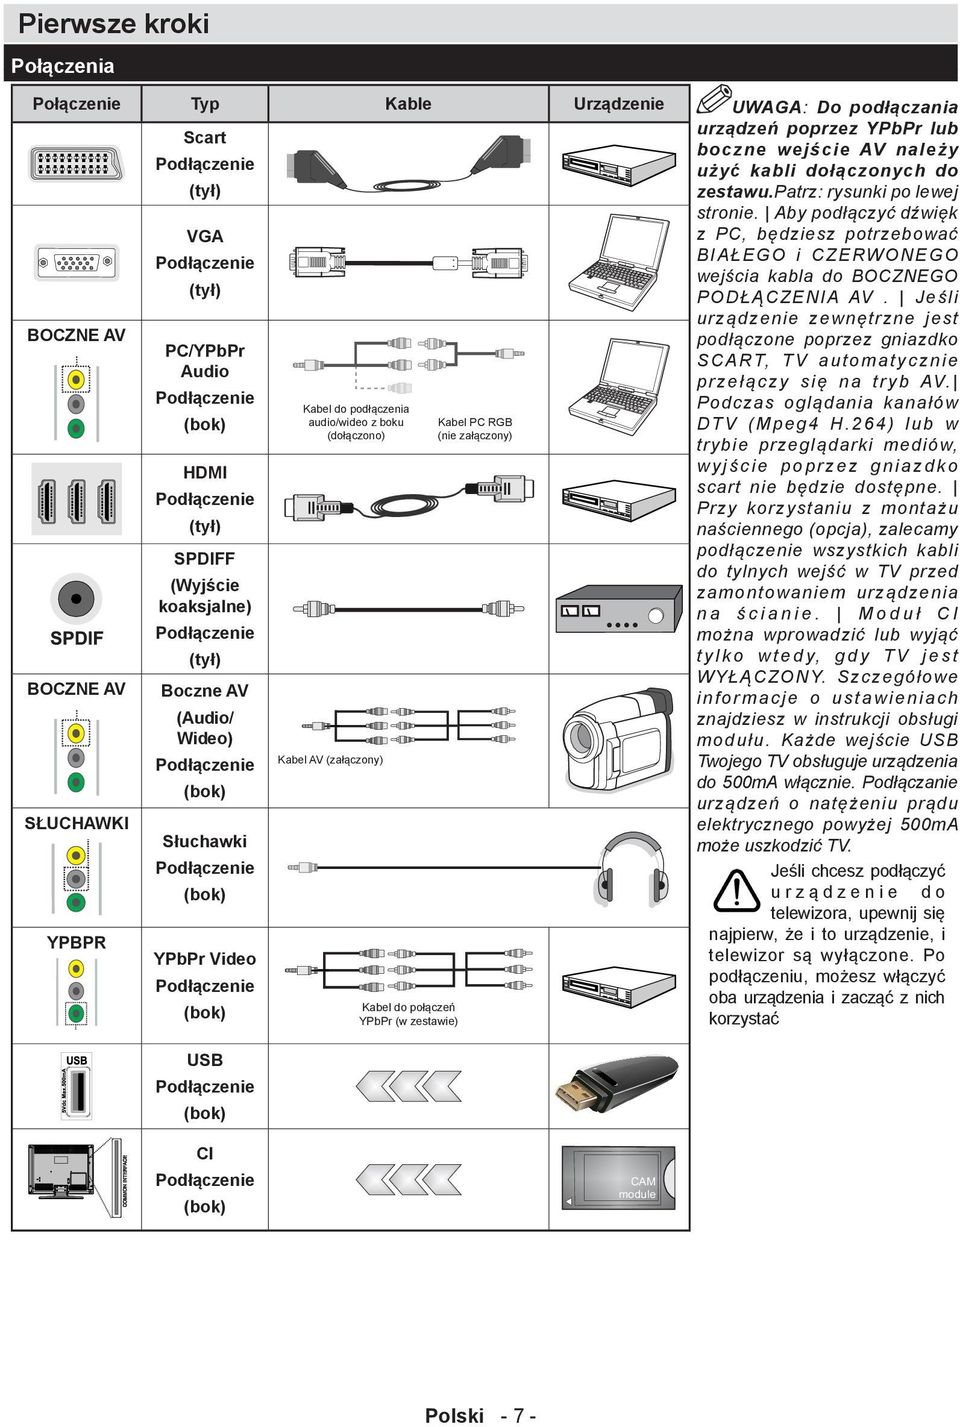 Kabel AV (załączony) Kabel do połączeń YPbPr (w zestawie) Kabel PC RGB (nie załączony) UWAGA: Do podłączania urządzeń poprzez YPbPr lub boczne wejście AV należy użyć kabli dołączonych do zestawu.